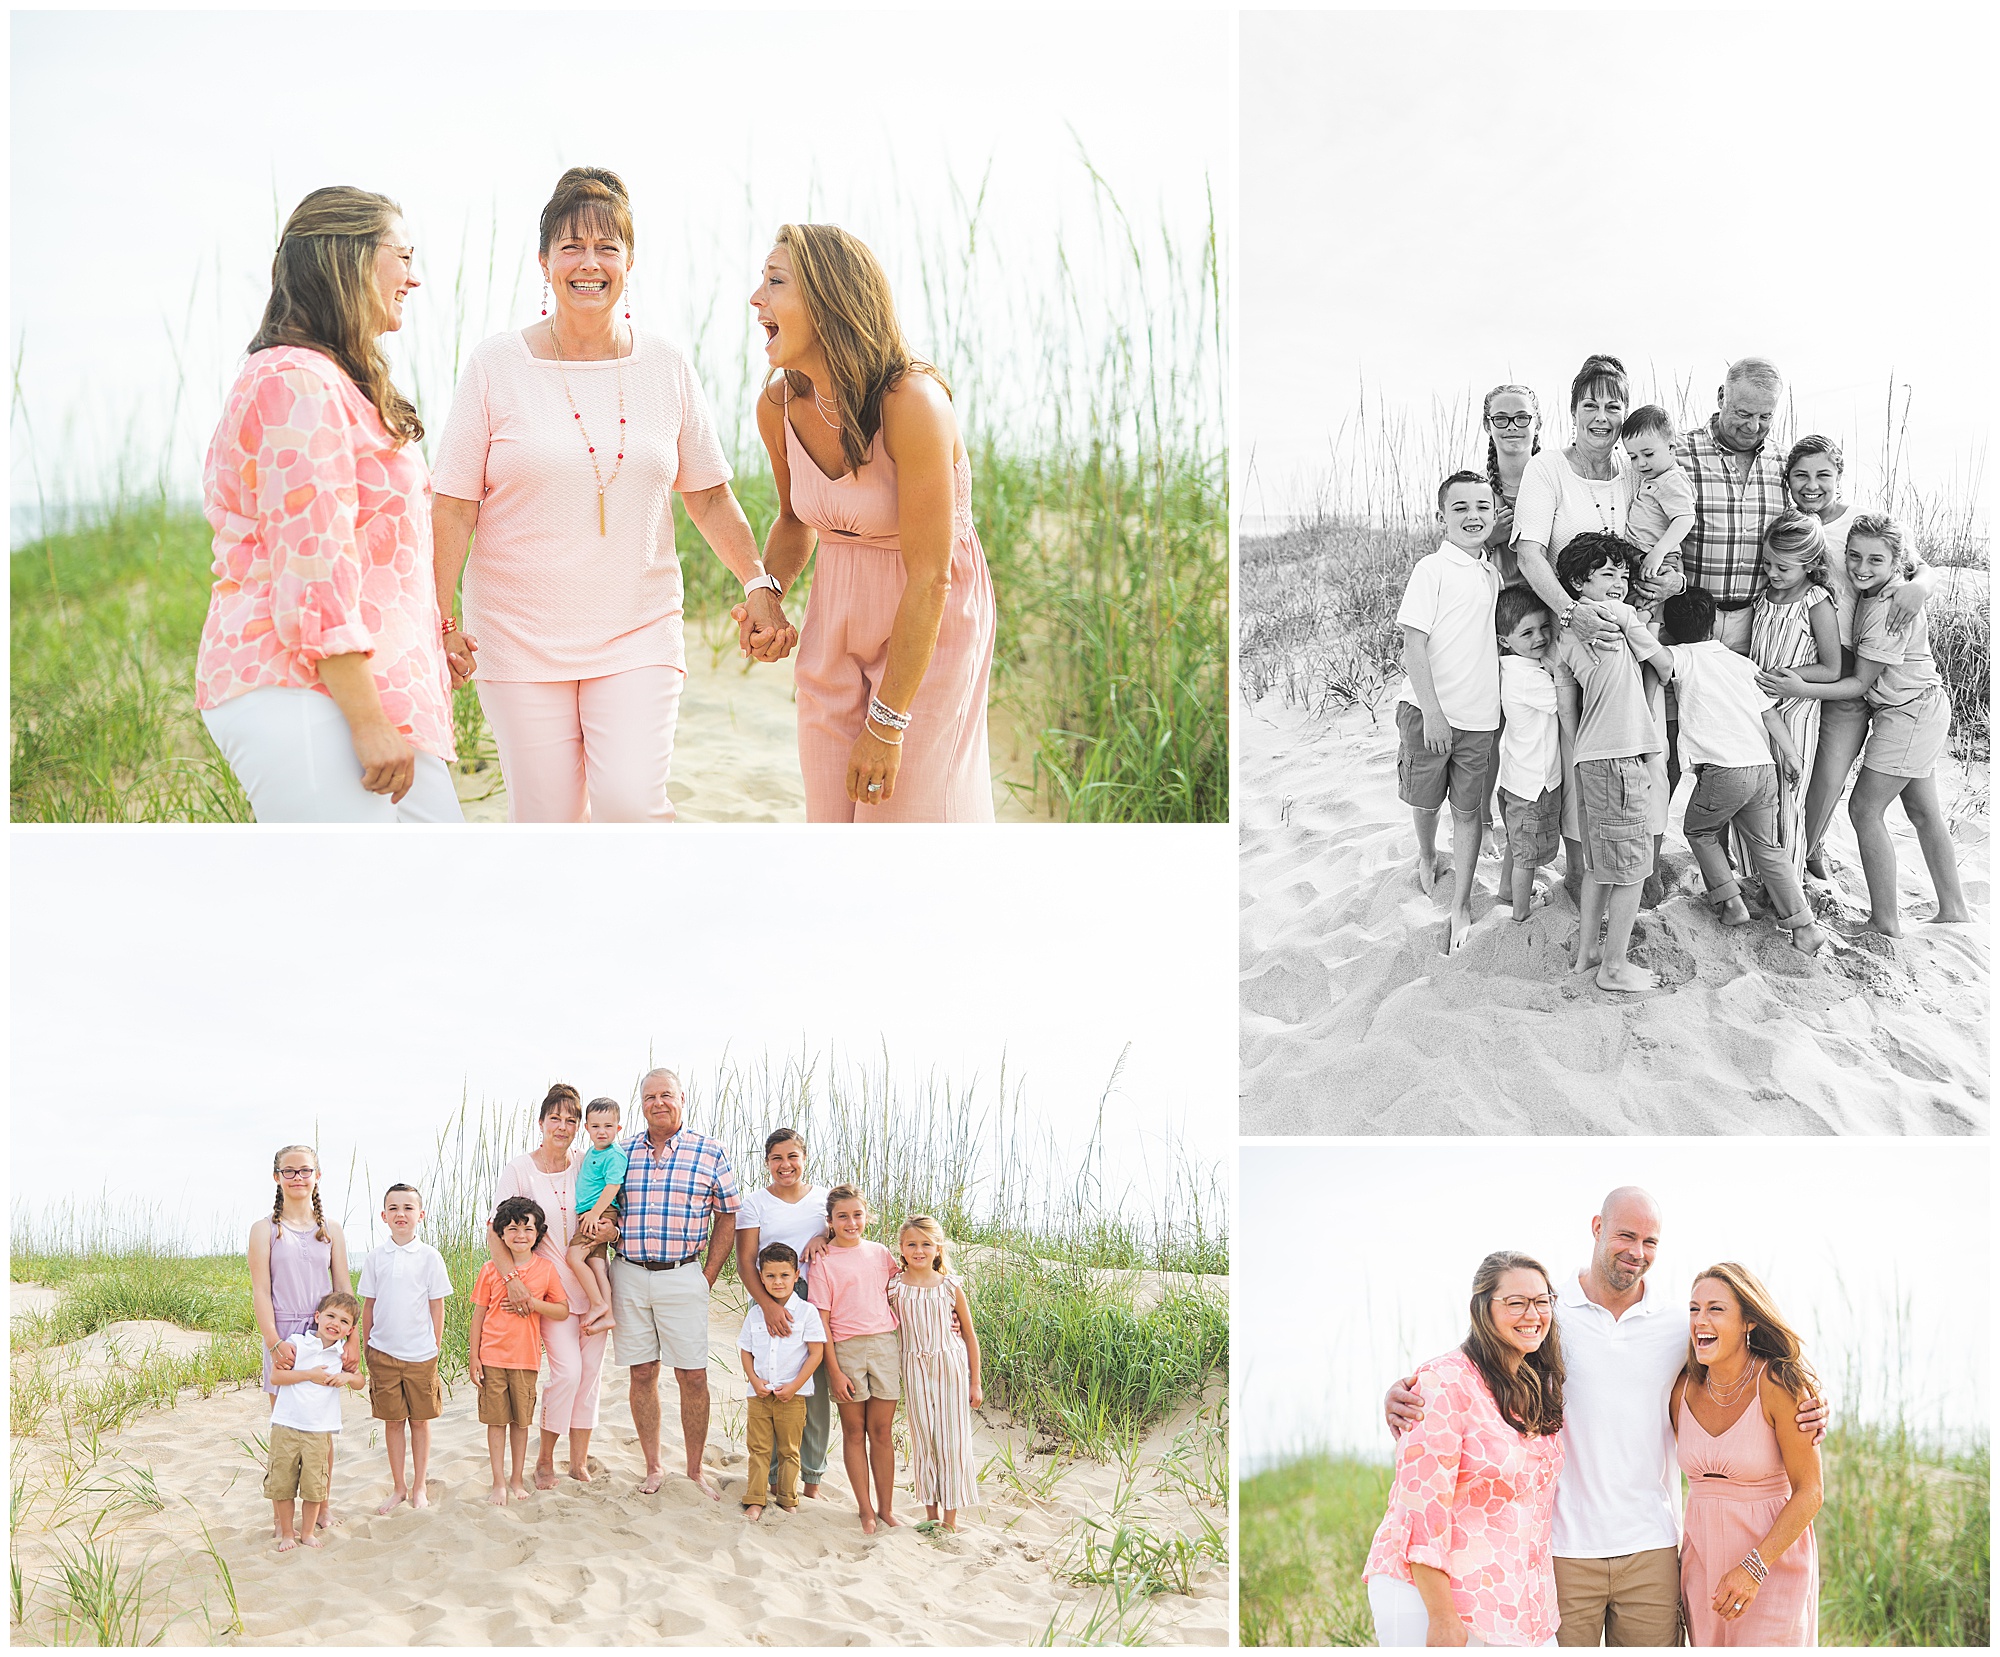 sandbridge vacation family photos, misty saves the day, virginia beach family photos